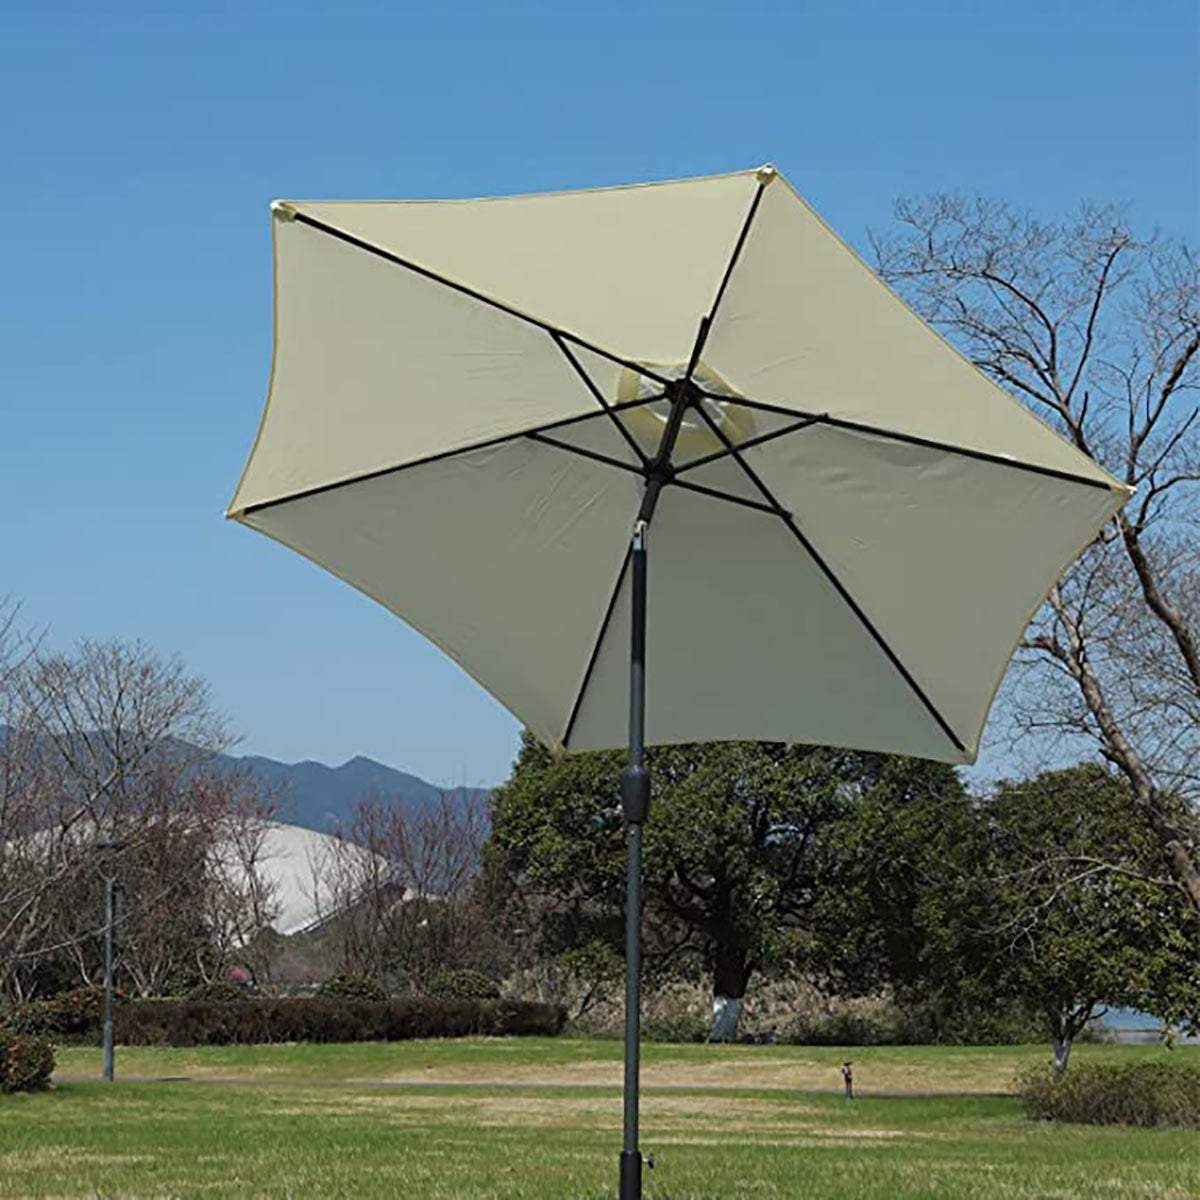 Garden Table Parasol Umbrella